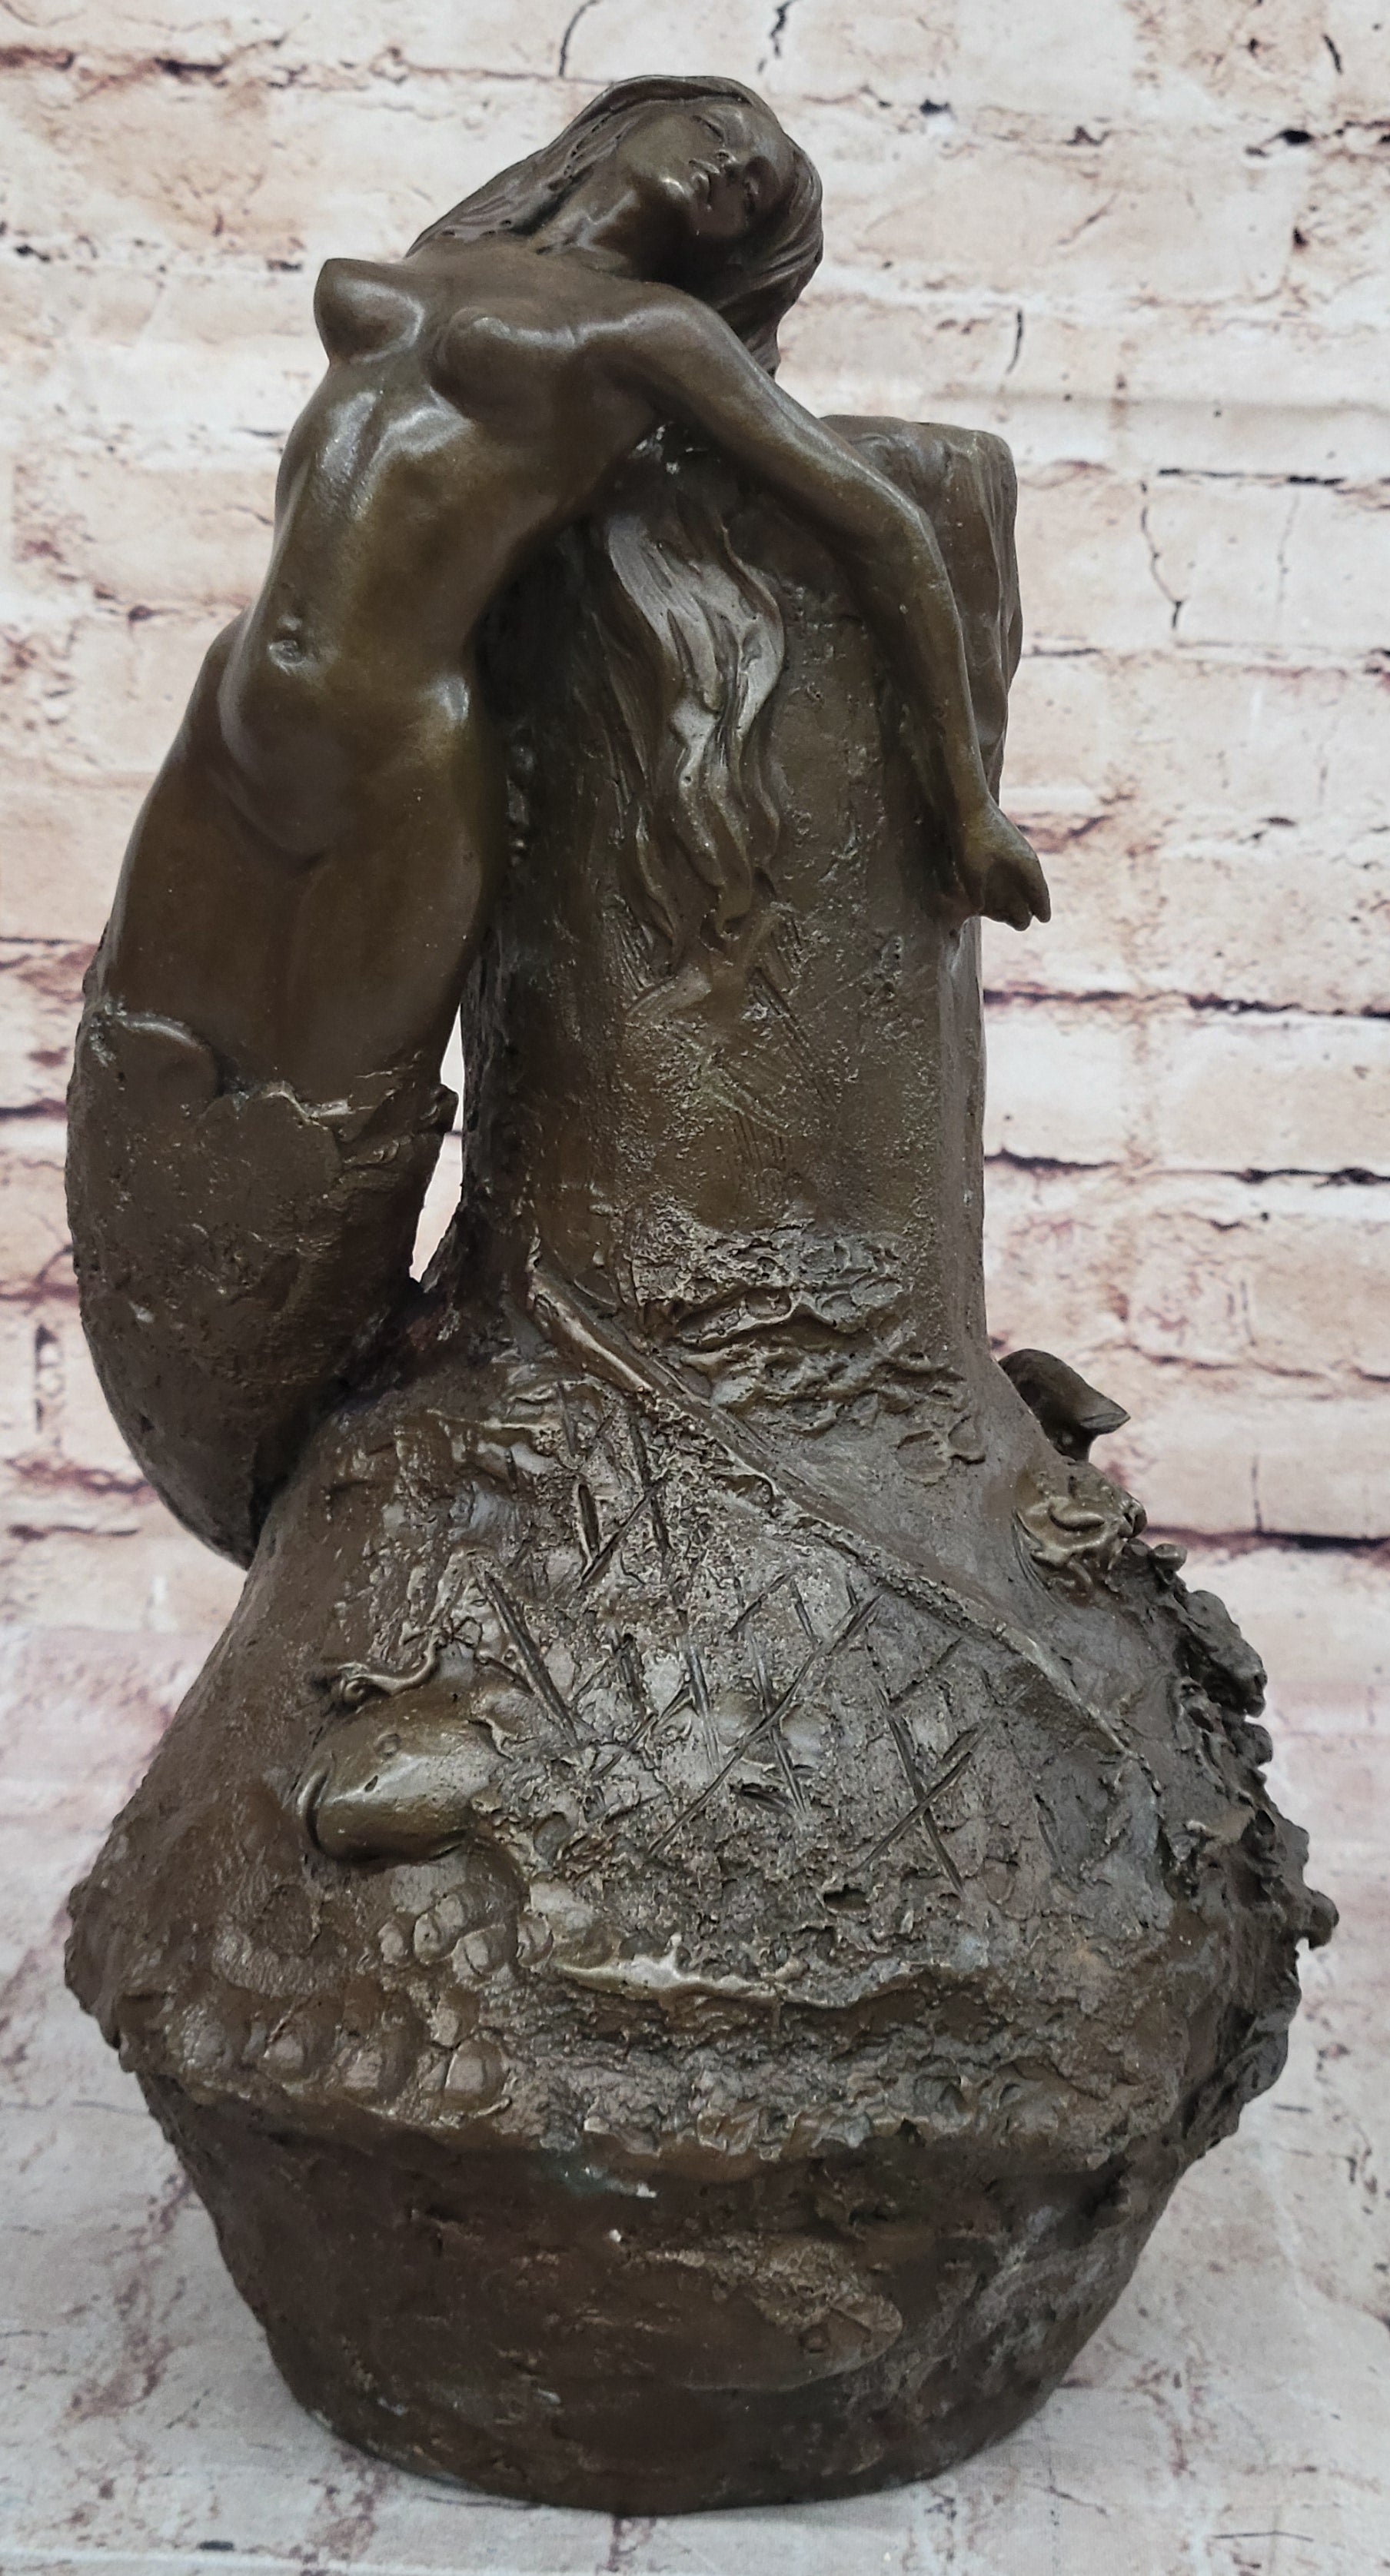 Handcrafted bronze sculpture SALE Merm Vitaleh Aldo Nouveau Art Original Signed